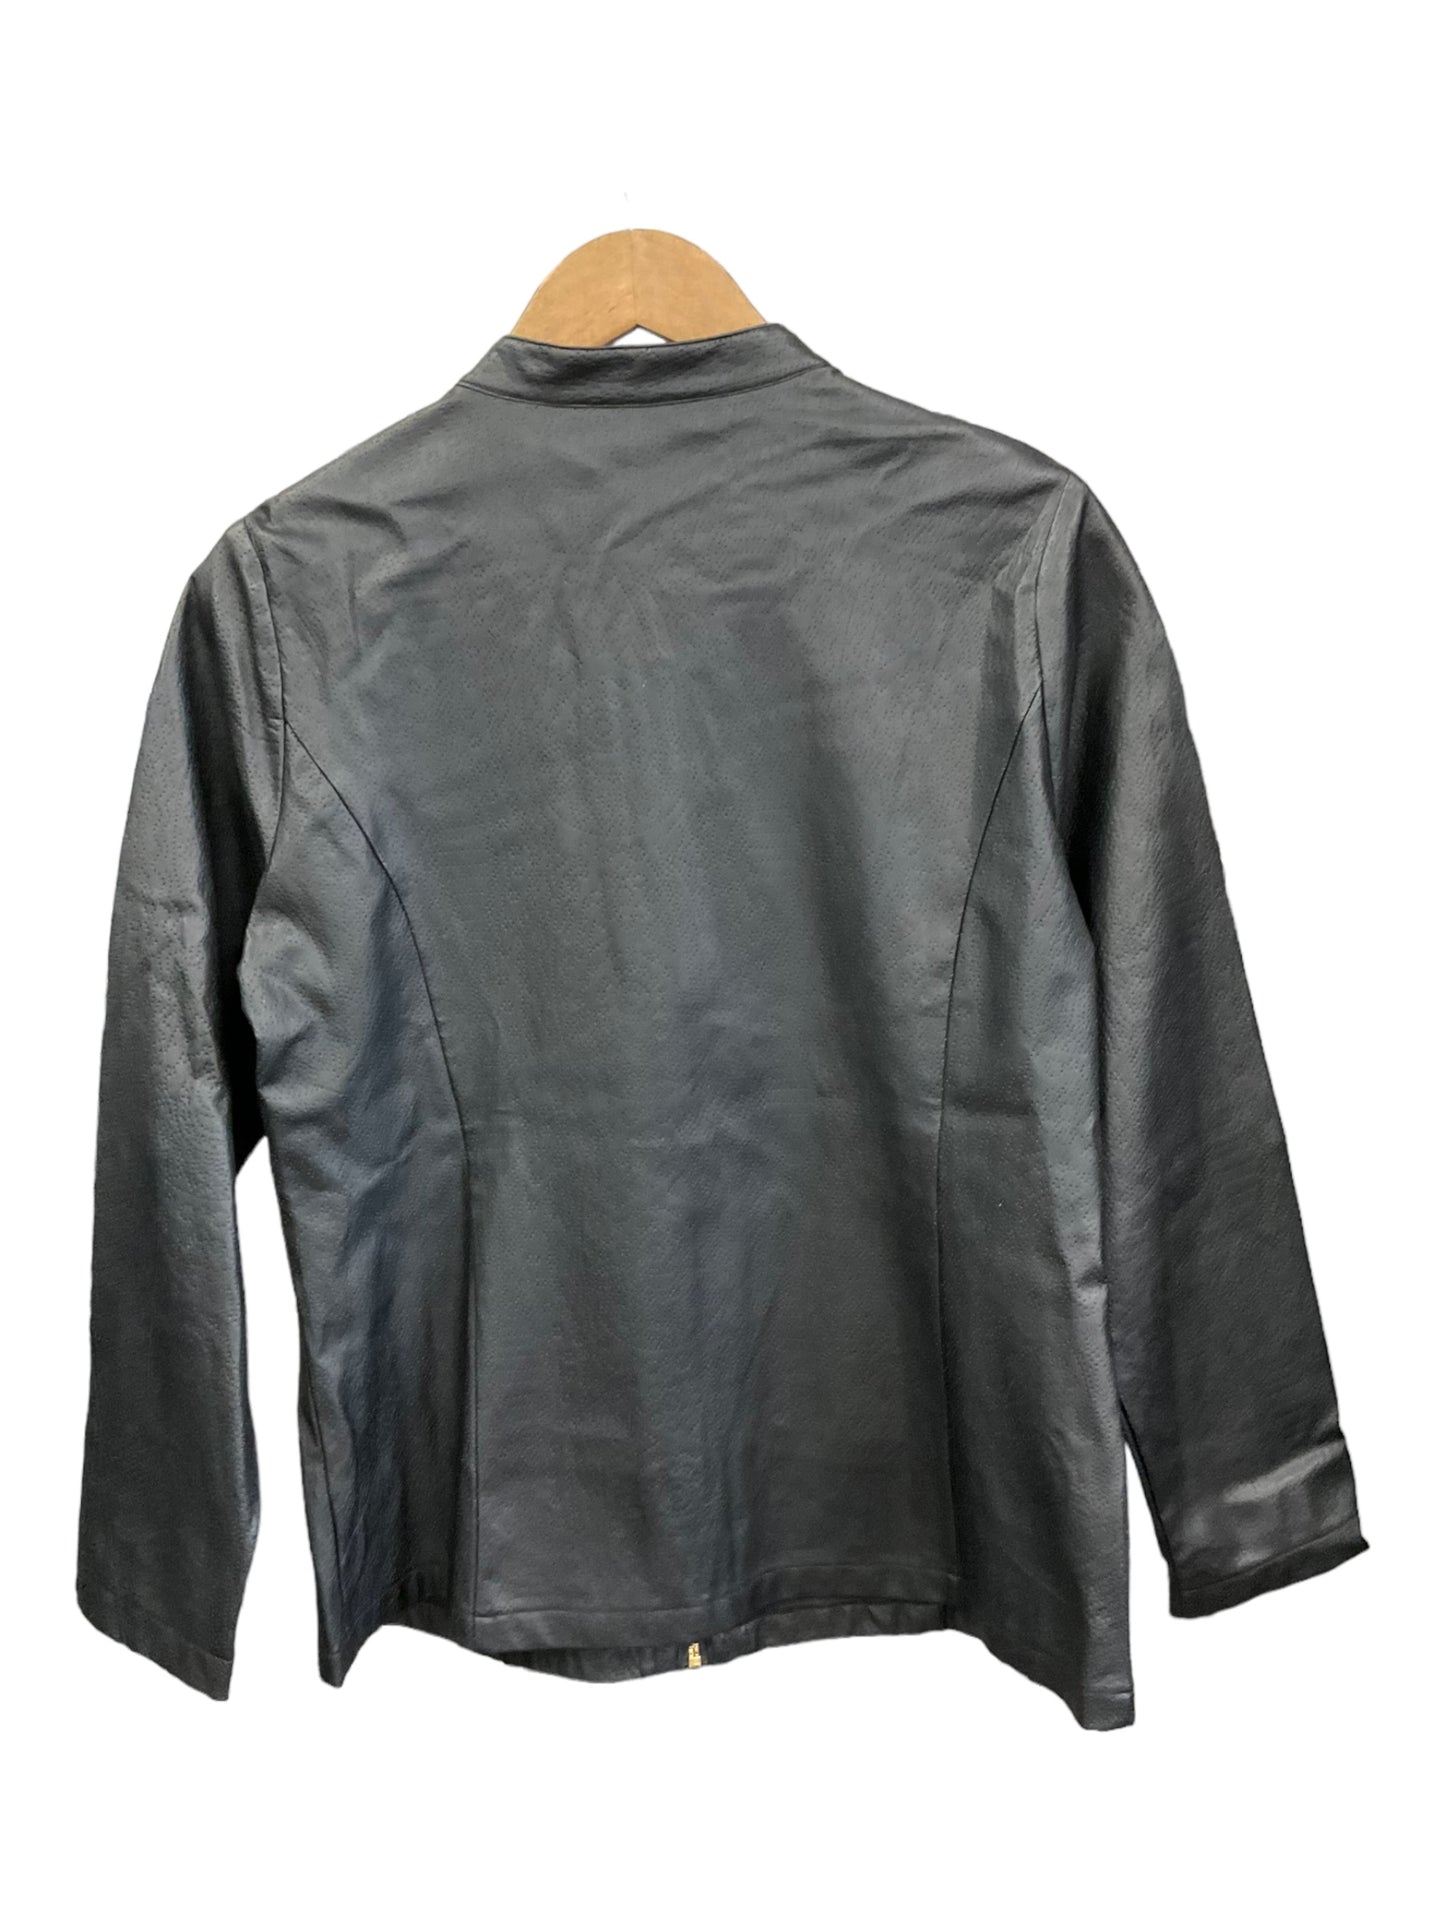 Jacket Moto By Valerie Stevens  Size: L